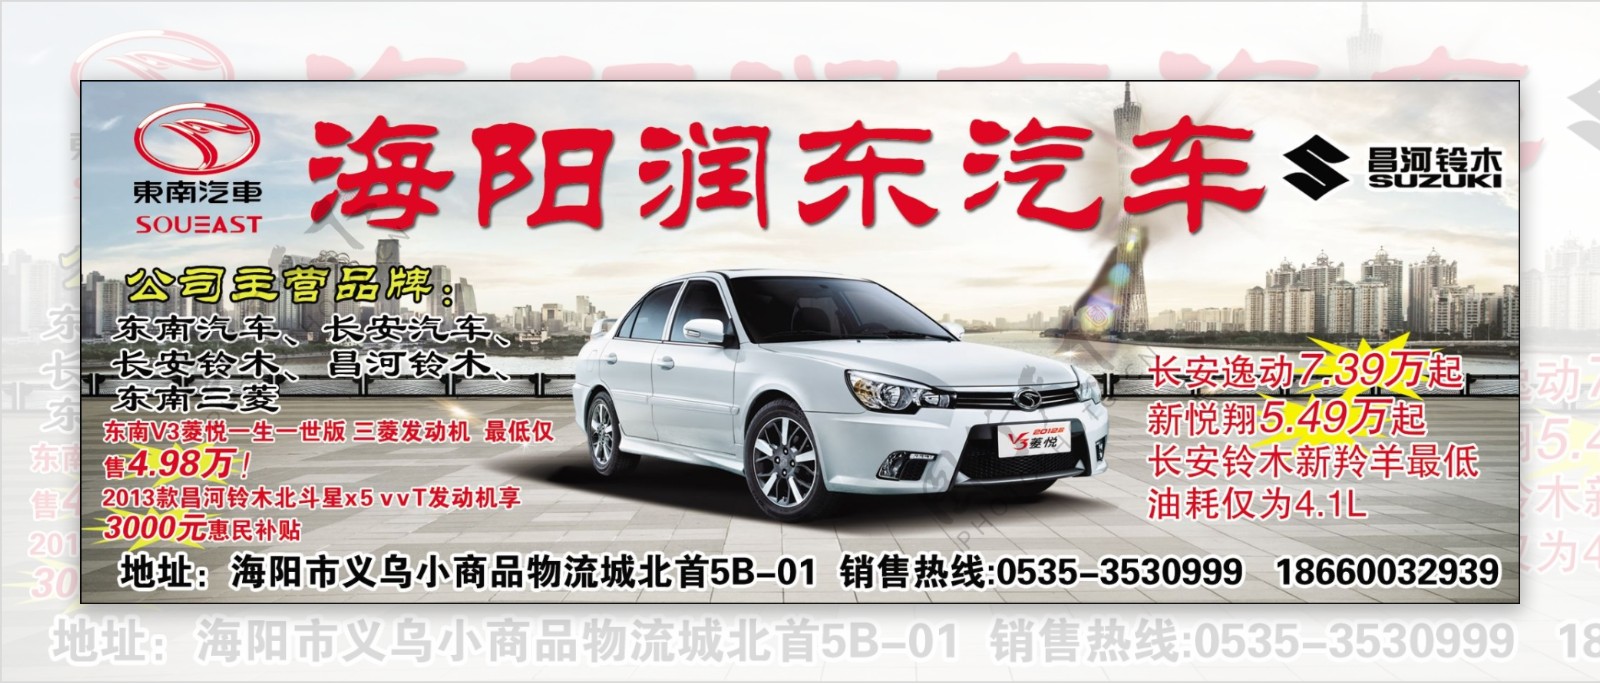 东南三菱汽车海报图片